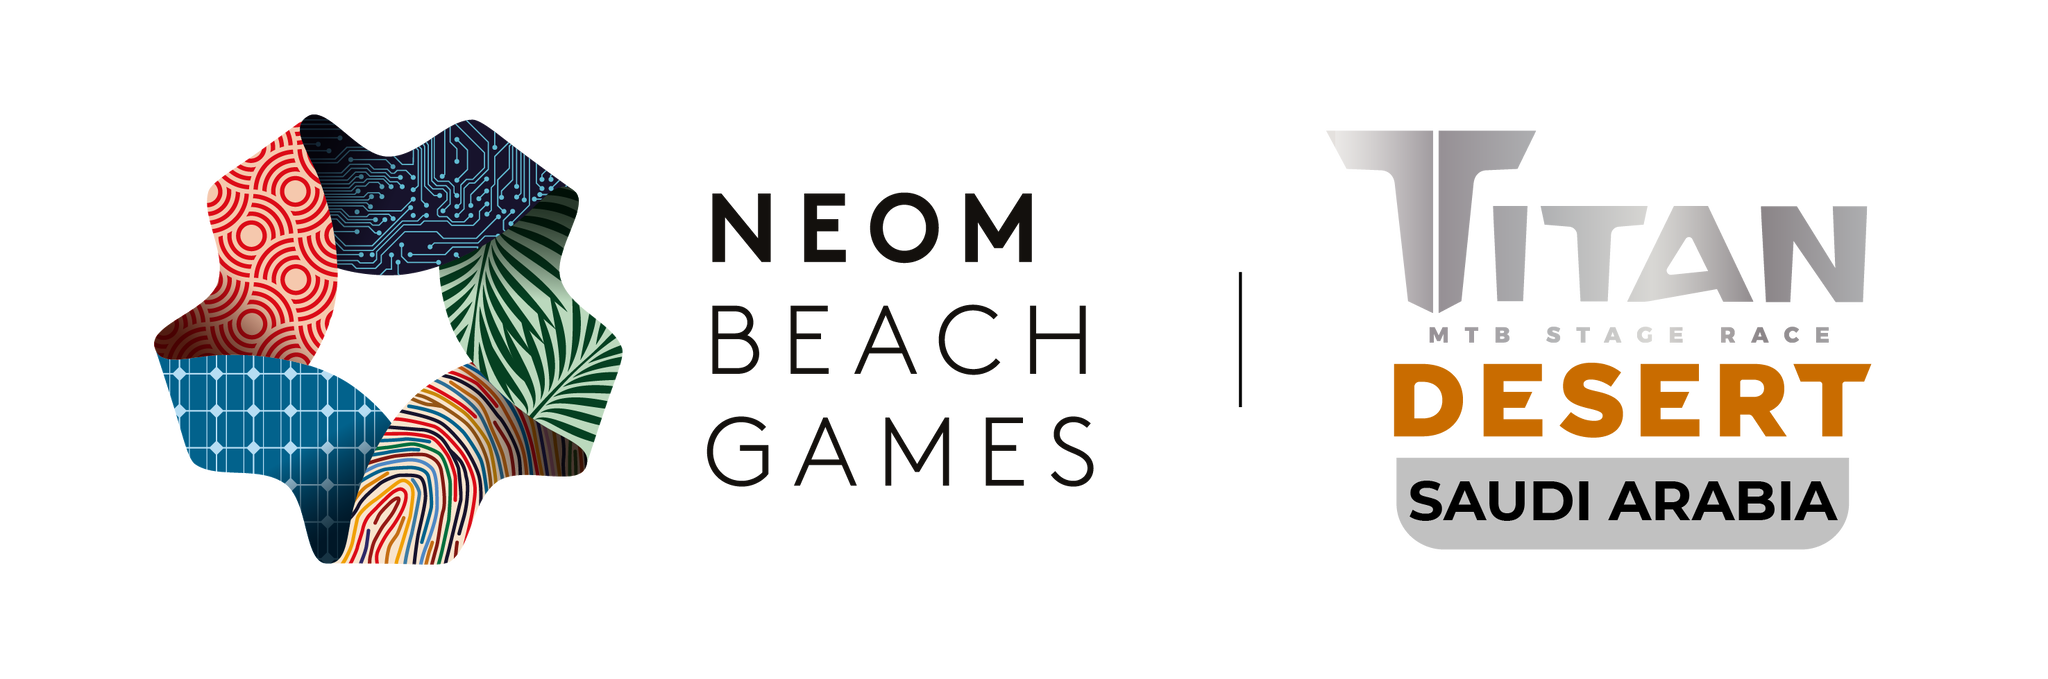 beach games titan logo 